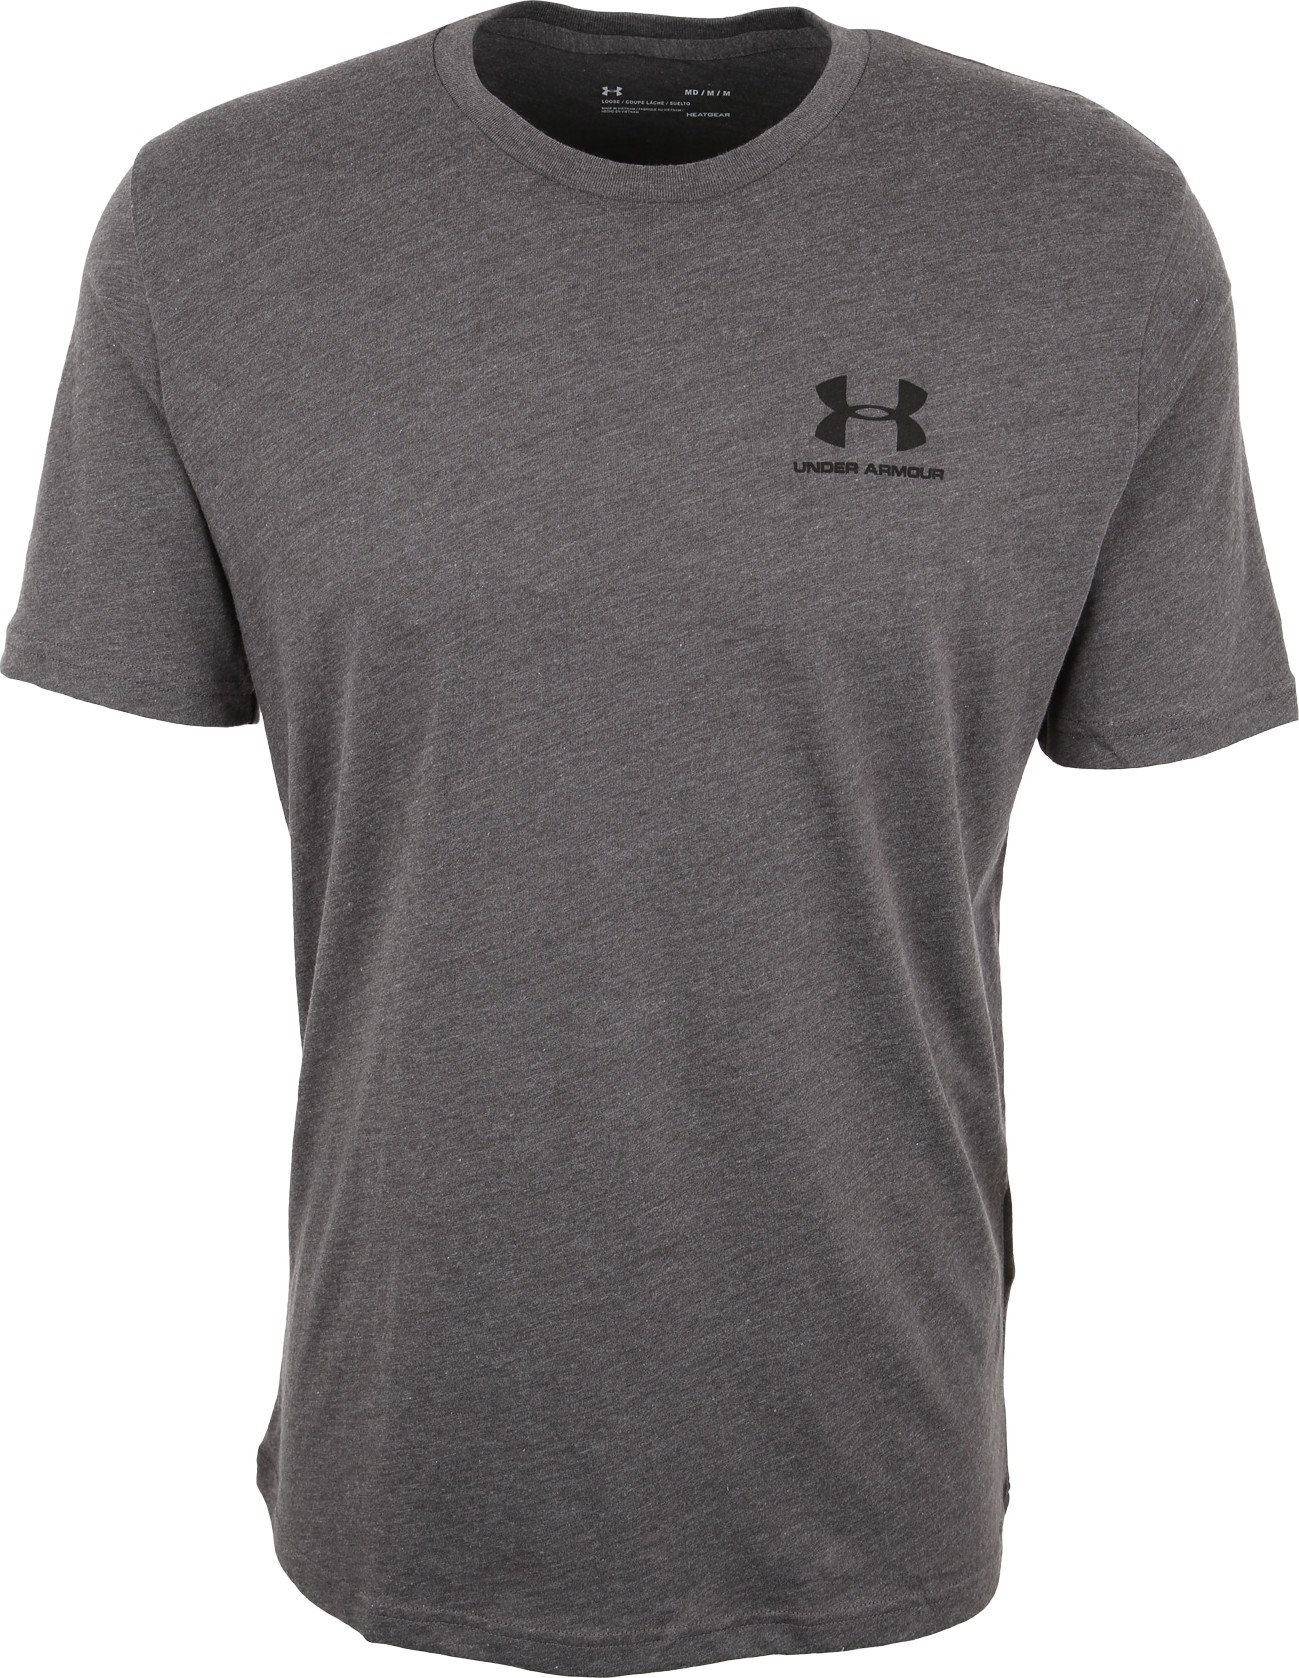 Funkční tričko 'Sportstyle' Under Armour šedý melír / černá